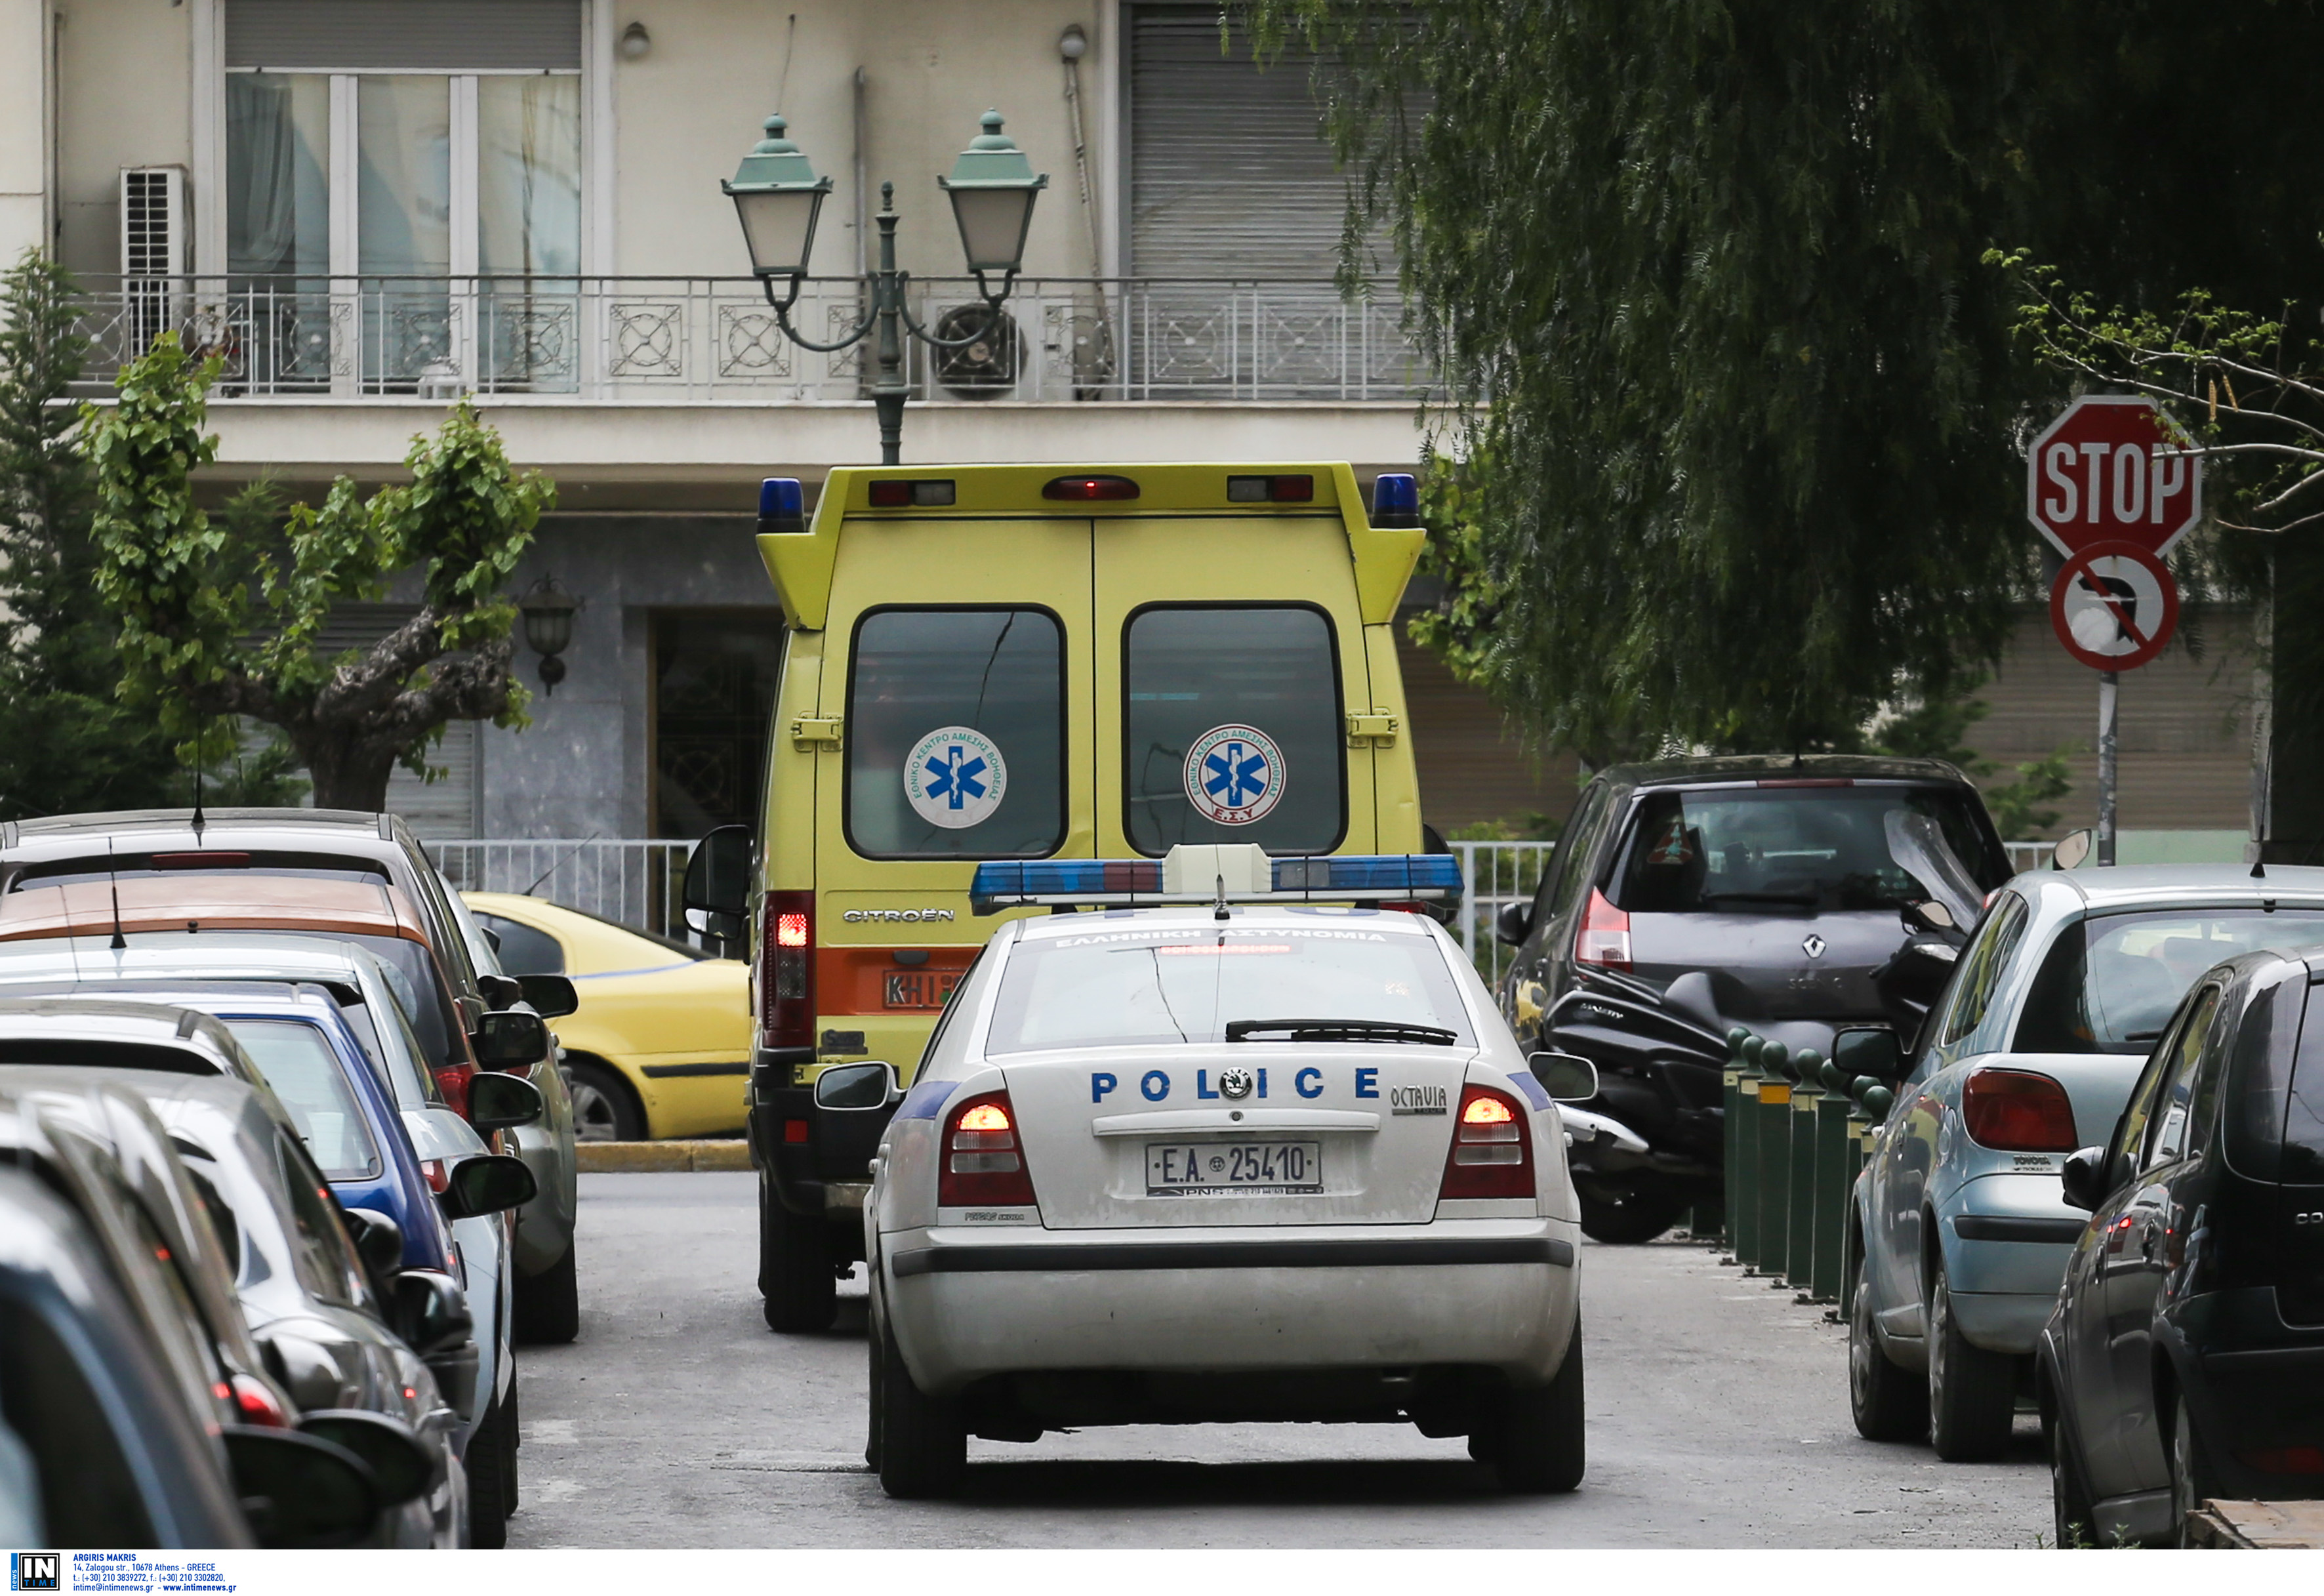 Καστοριά: Λεωφορείο παρέσυρε και σκότωσε μετανάστη! Σε κατάσταση σοκ οι δύο φίλοι του άτυχου νεαρού